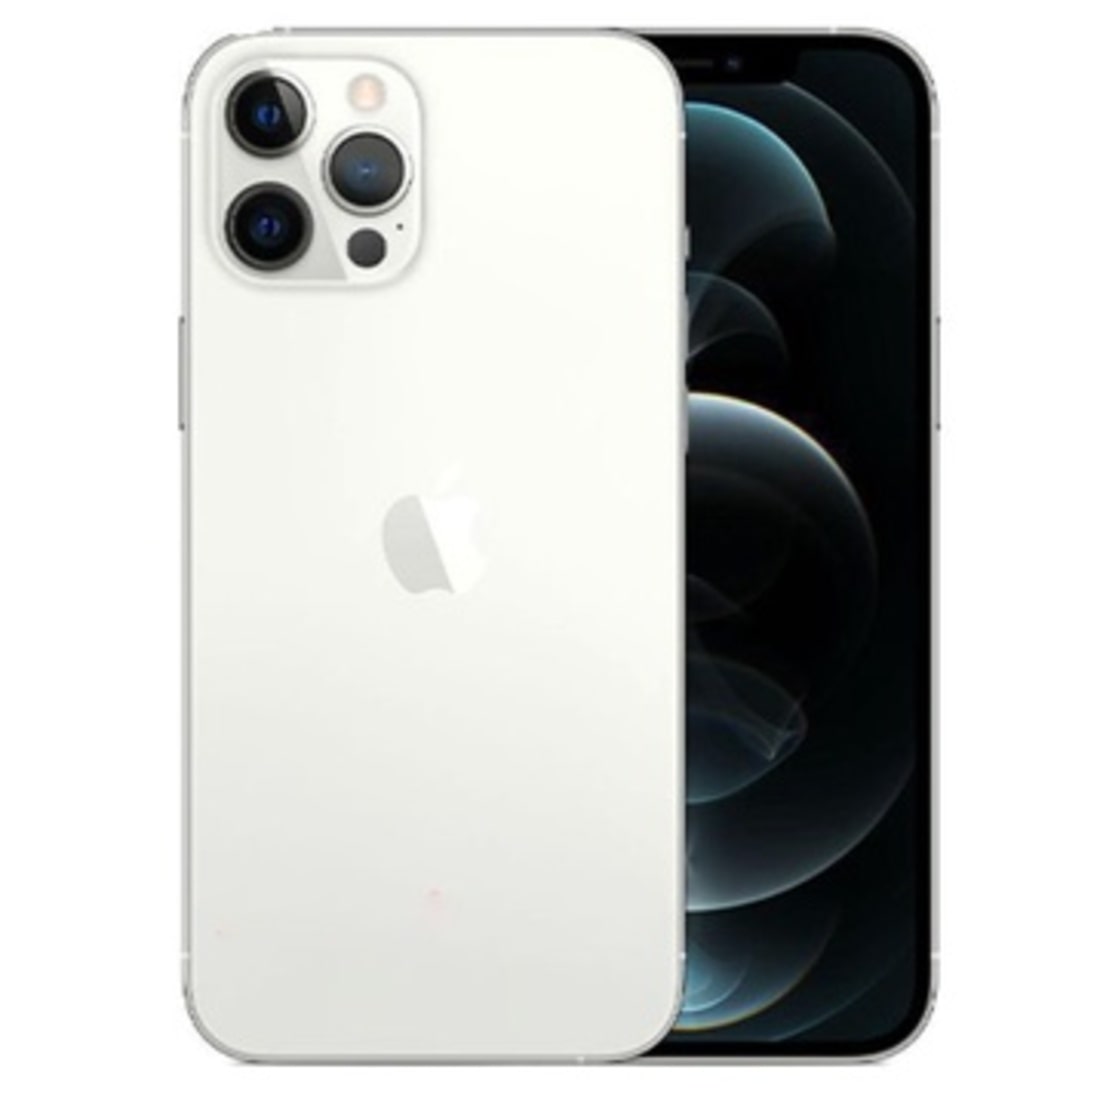 iPhone 12 Pro Max màu Silver – màu bạc quý phái, cao cấp